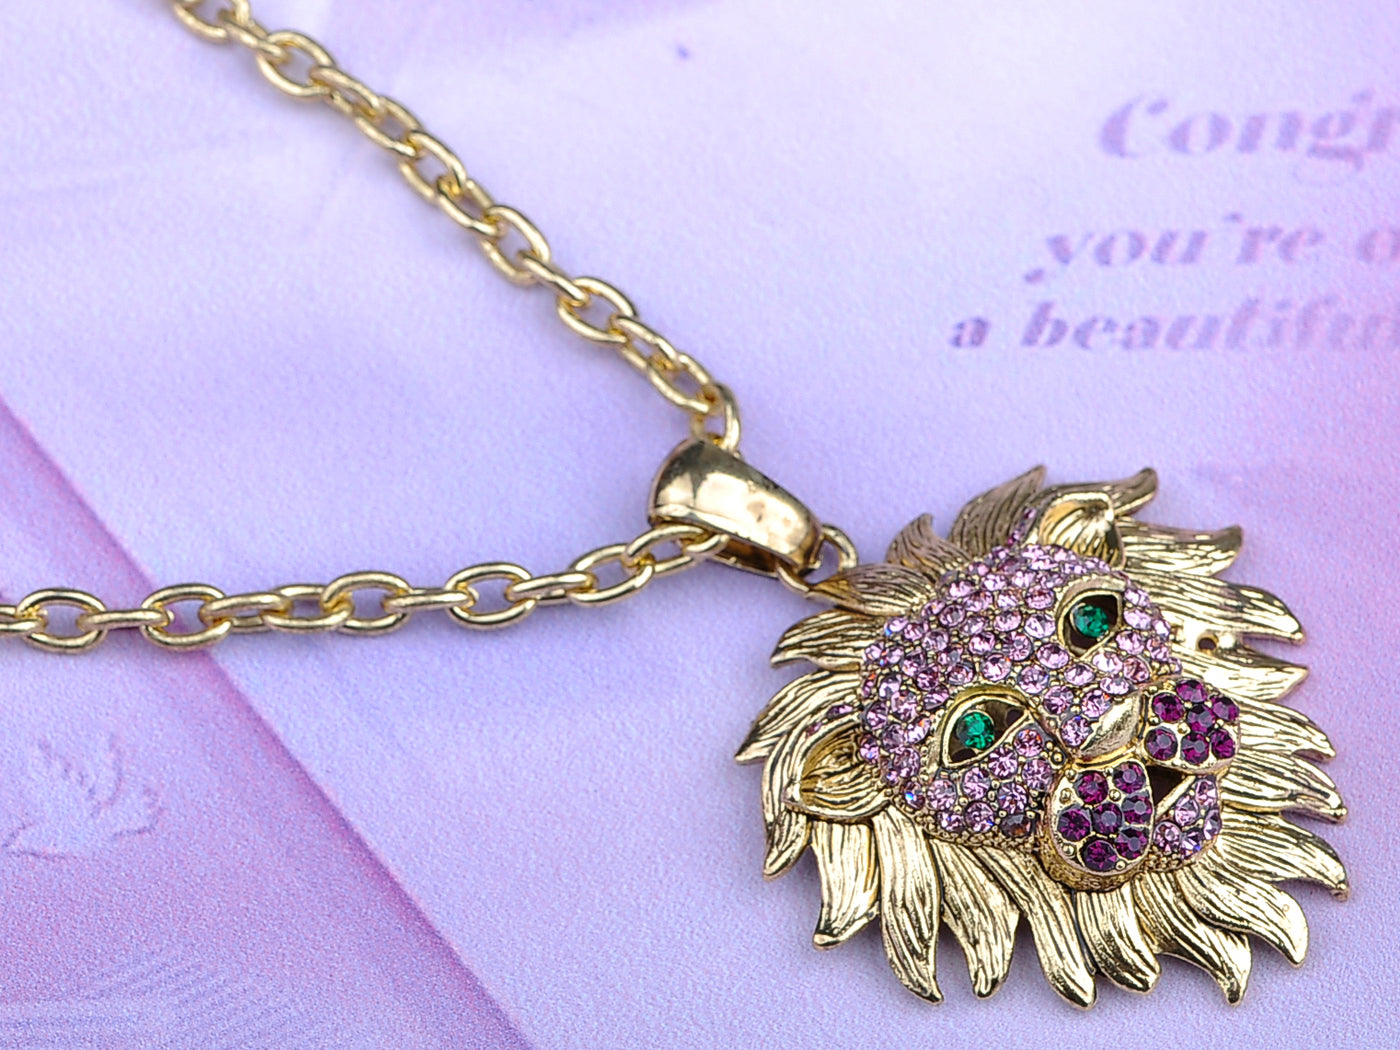 Detailed Light Purple Fierce Lion Pendant Necklace